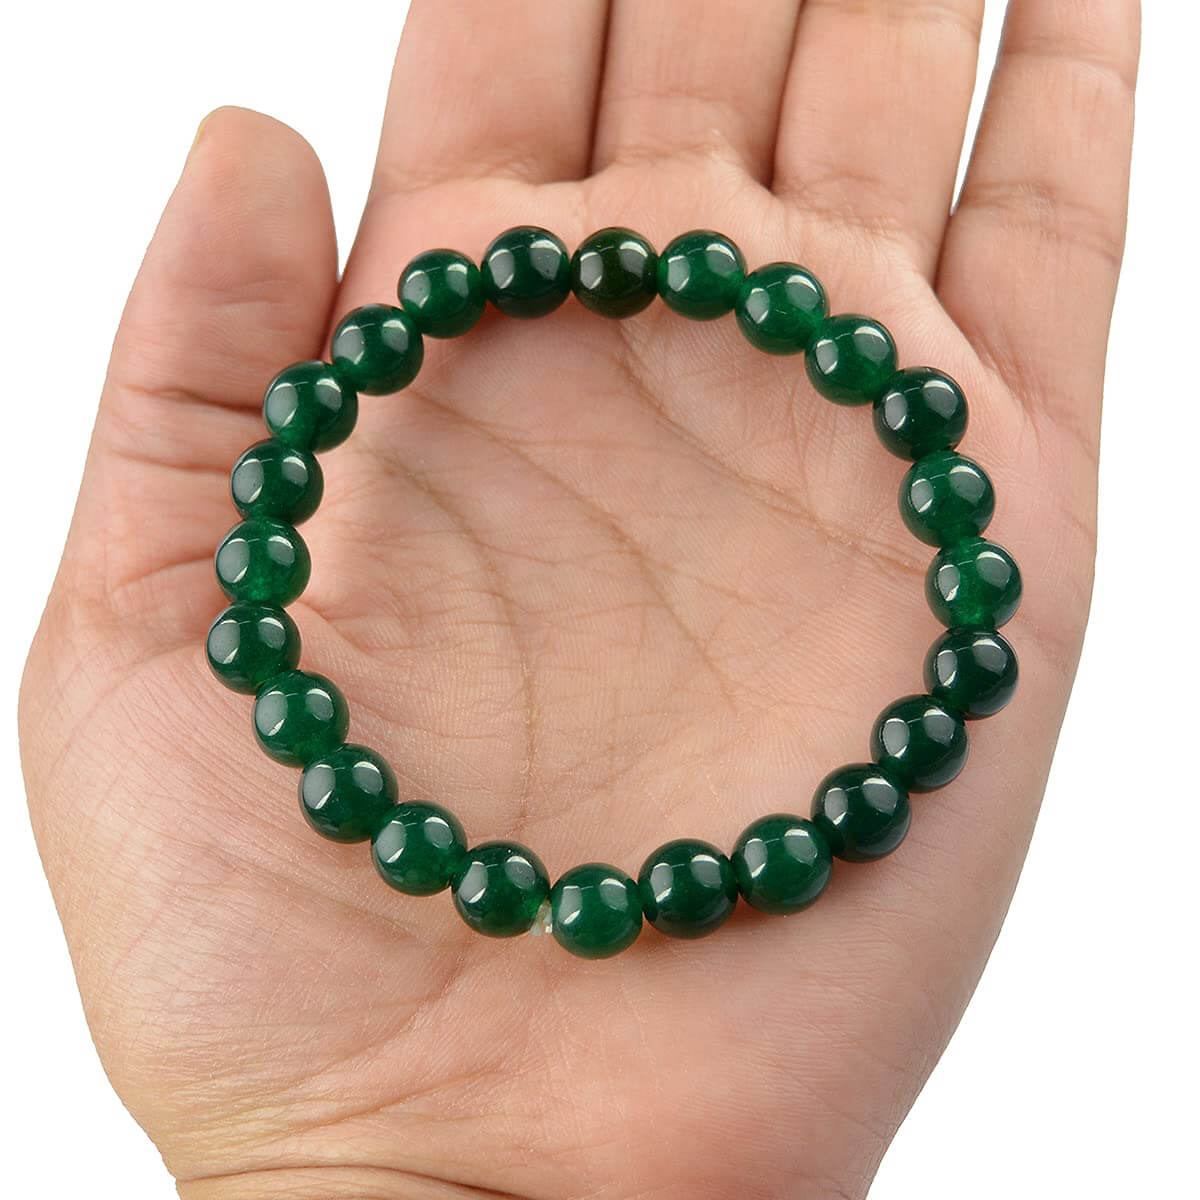 Green Aventurine Crystal Bracelet for Reiki Healing 8 MM